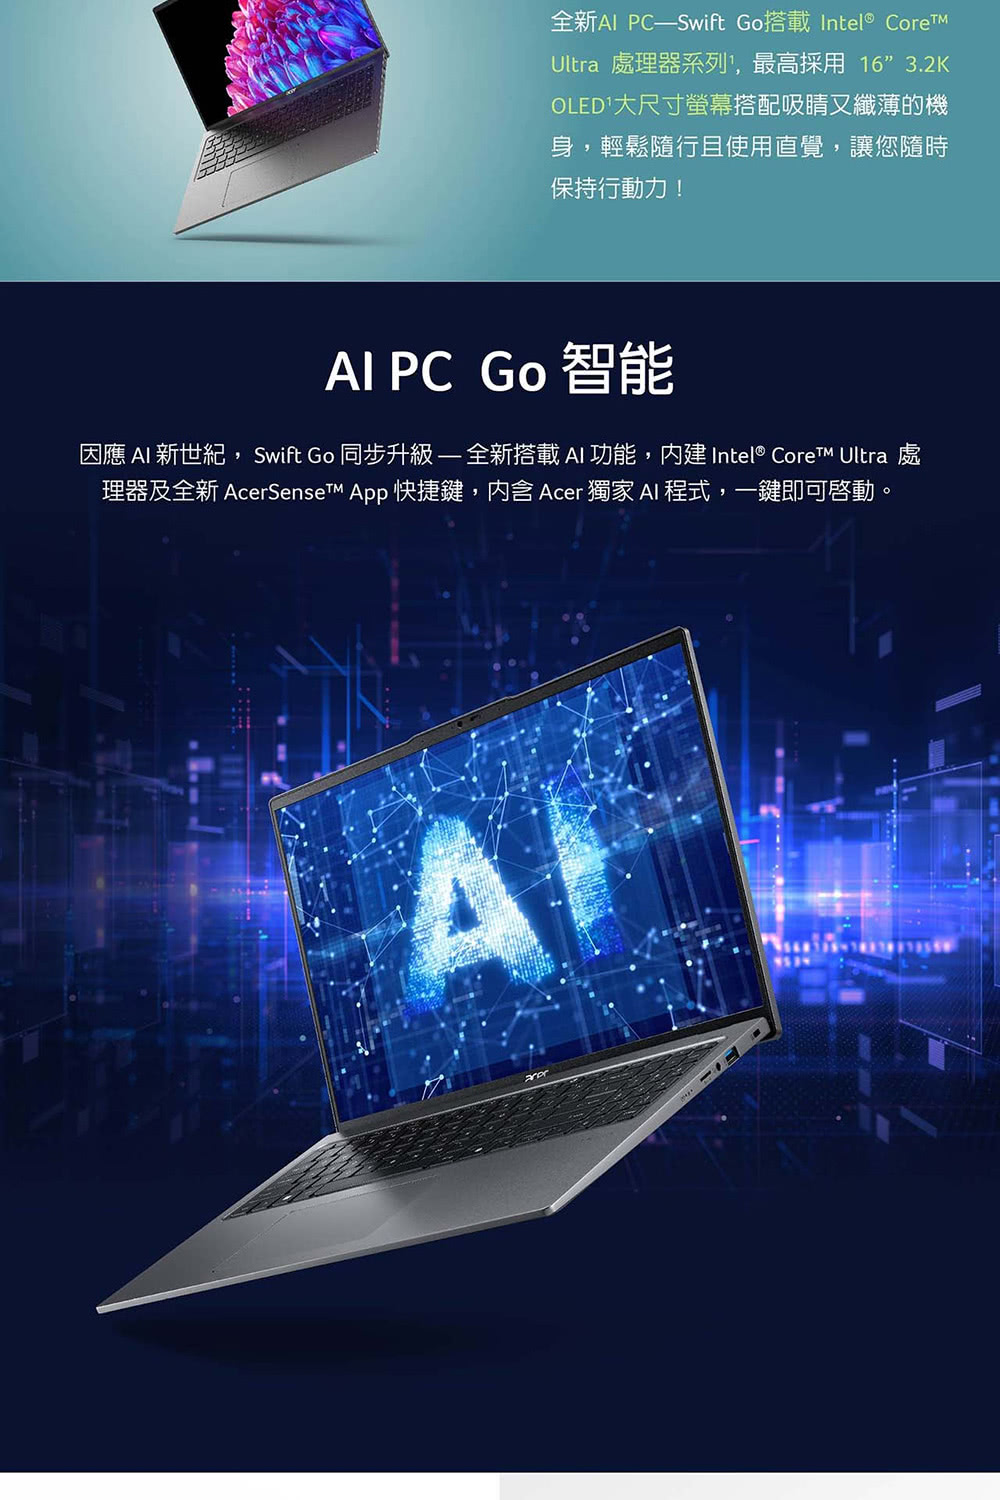 Acer 宏碁 特仕版 16吋輕薄效能AI筆電(Swift 